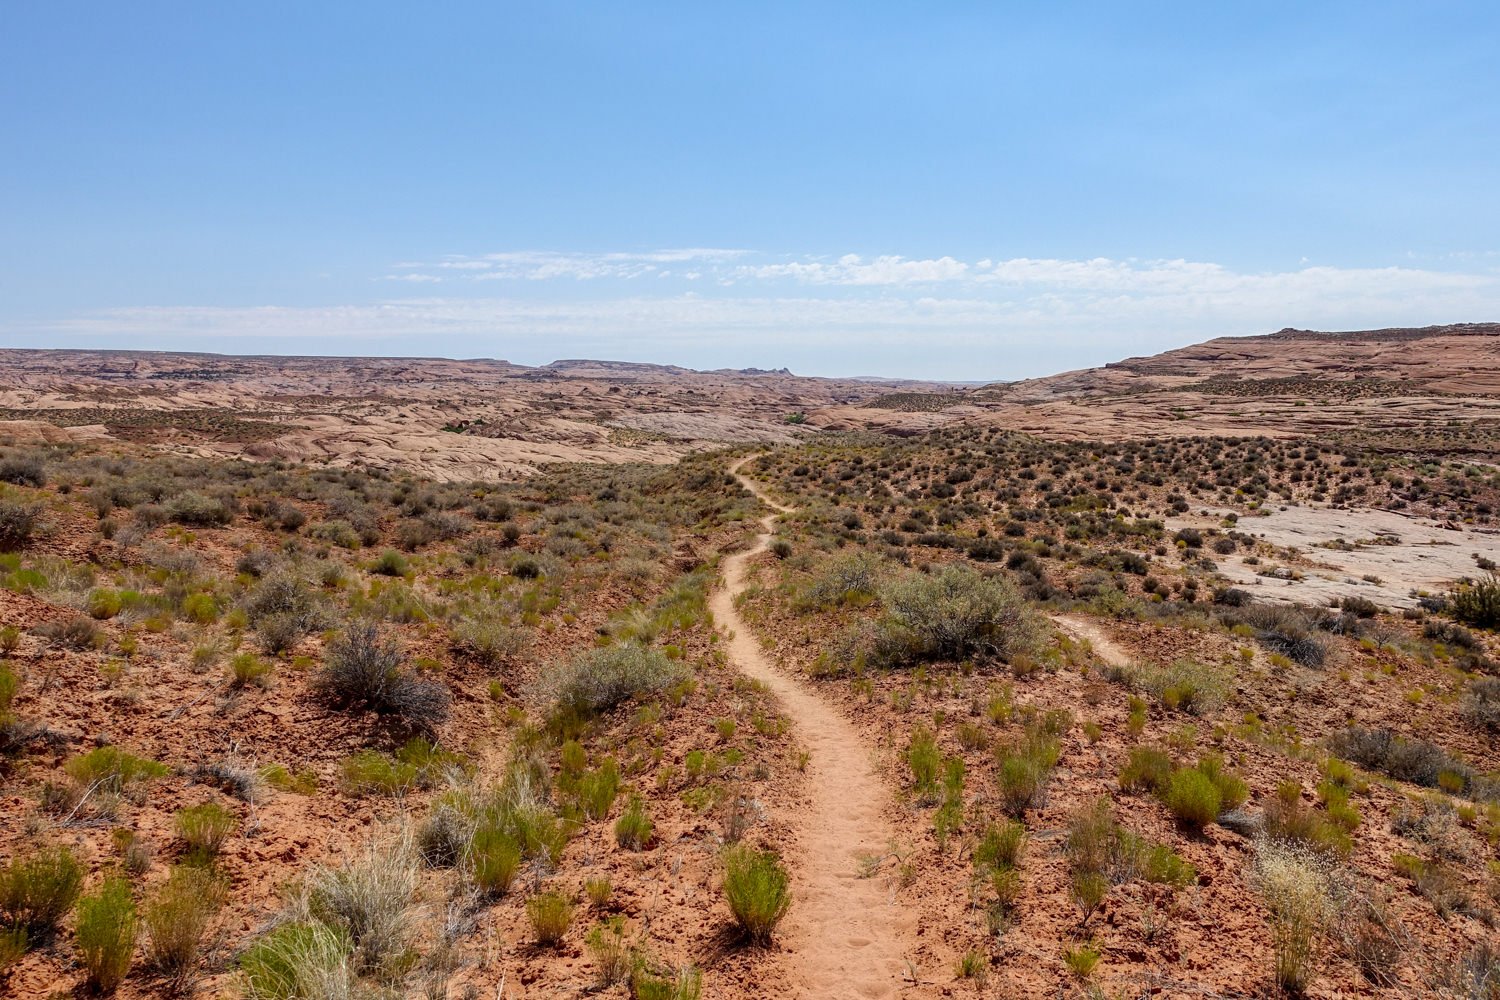 A trail winding through the high desert near Coyote Gulch